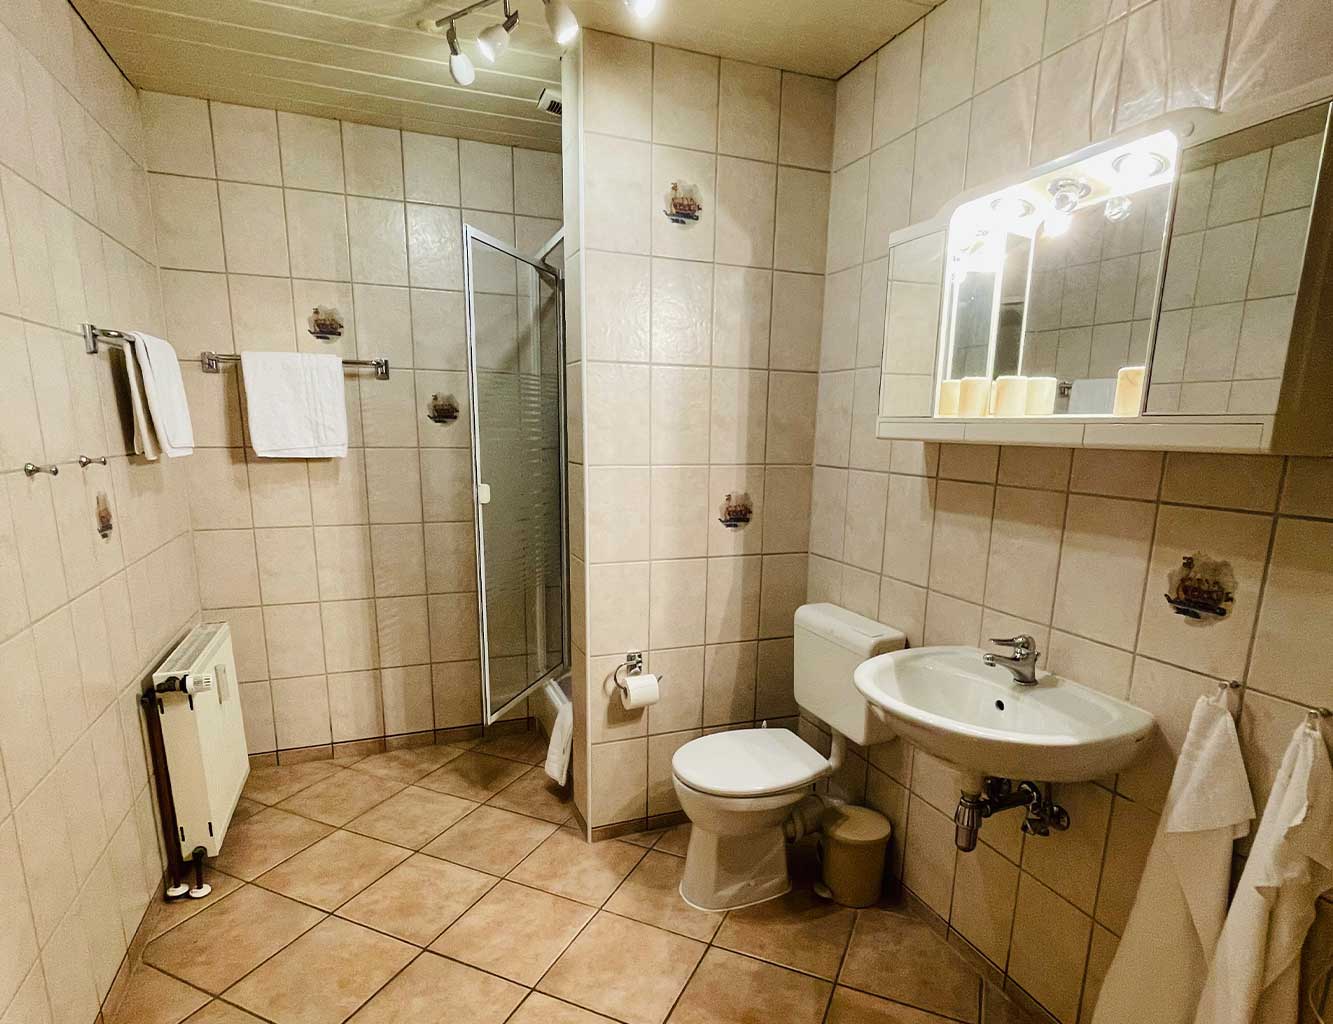 Badezimmer in der Ferienwohnung in Hollern-Twielenfleth